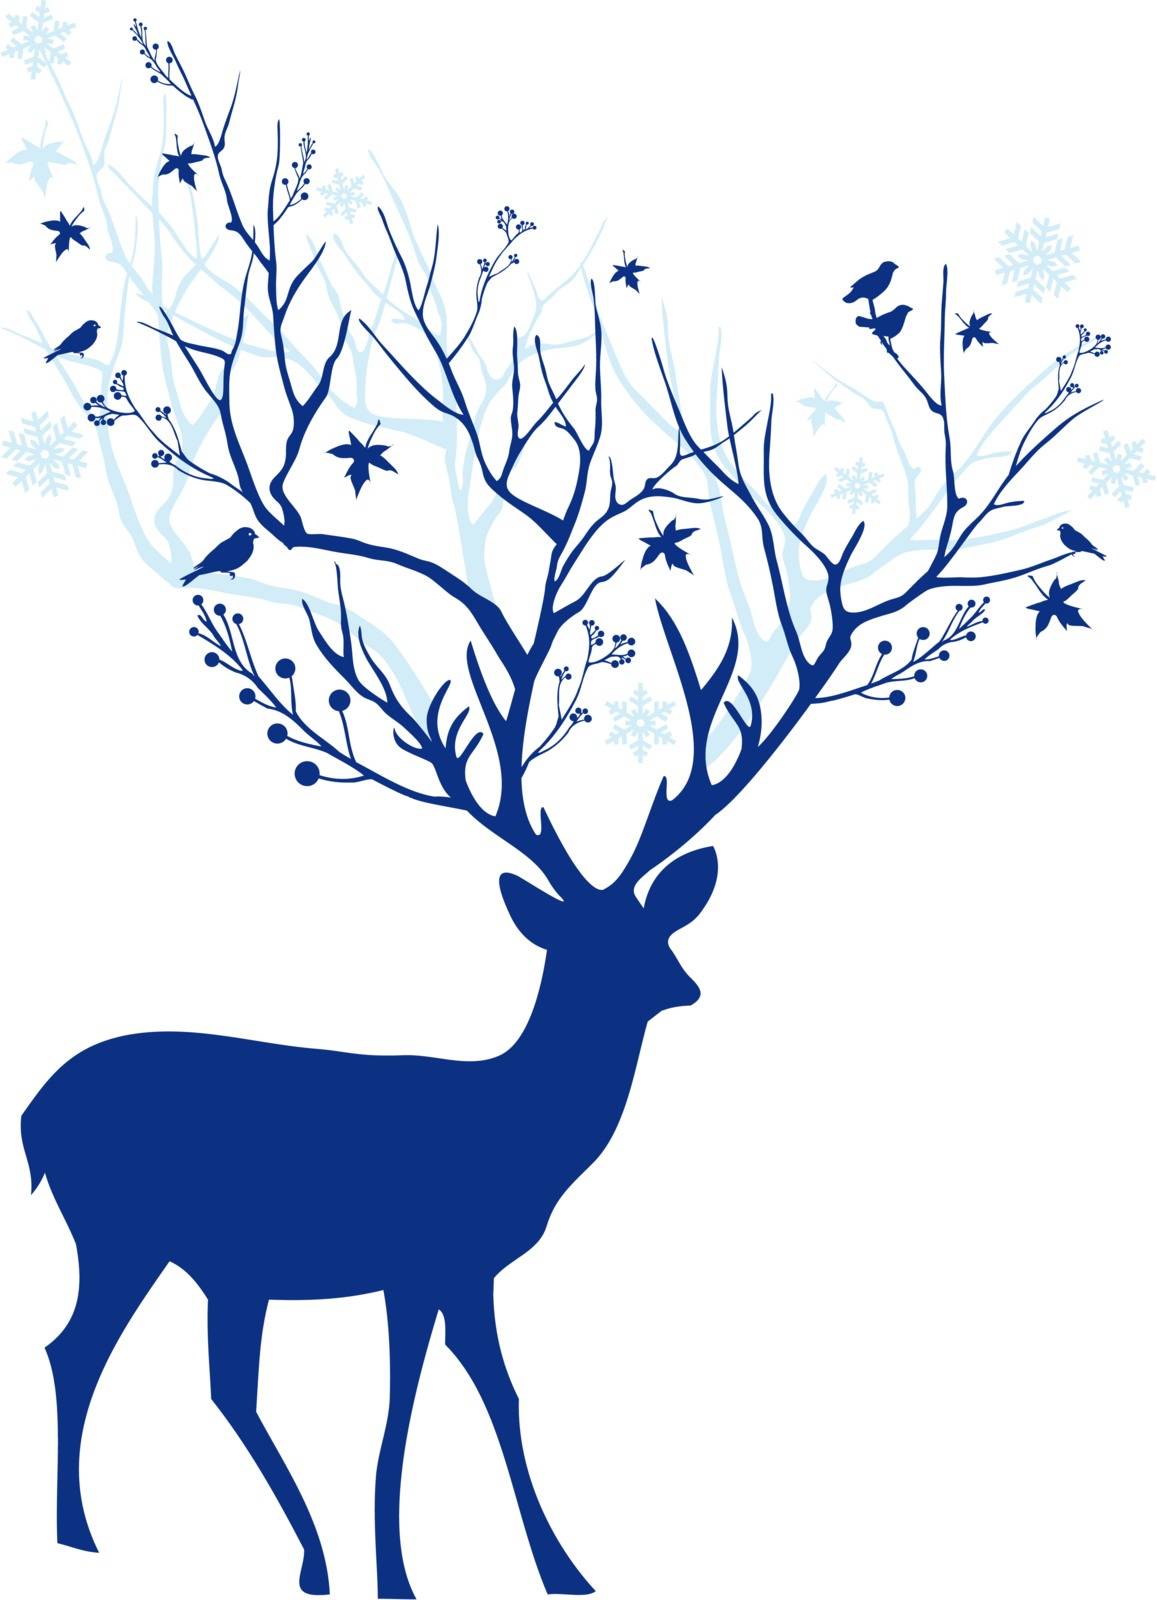 Blue Christmas deer, vector by dustypink